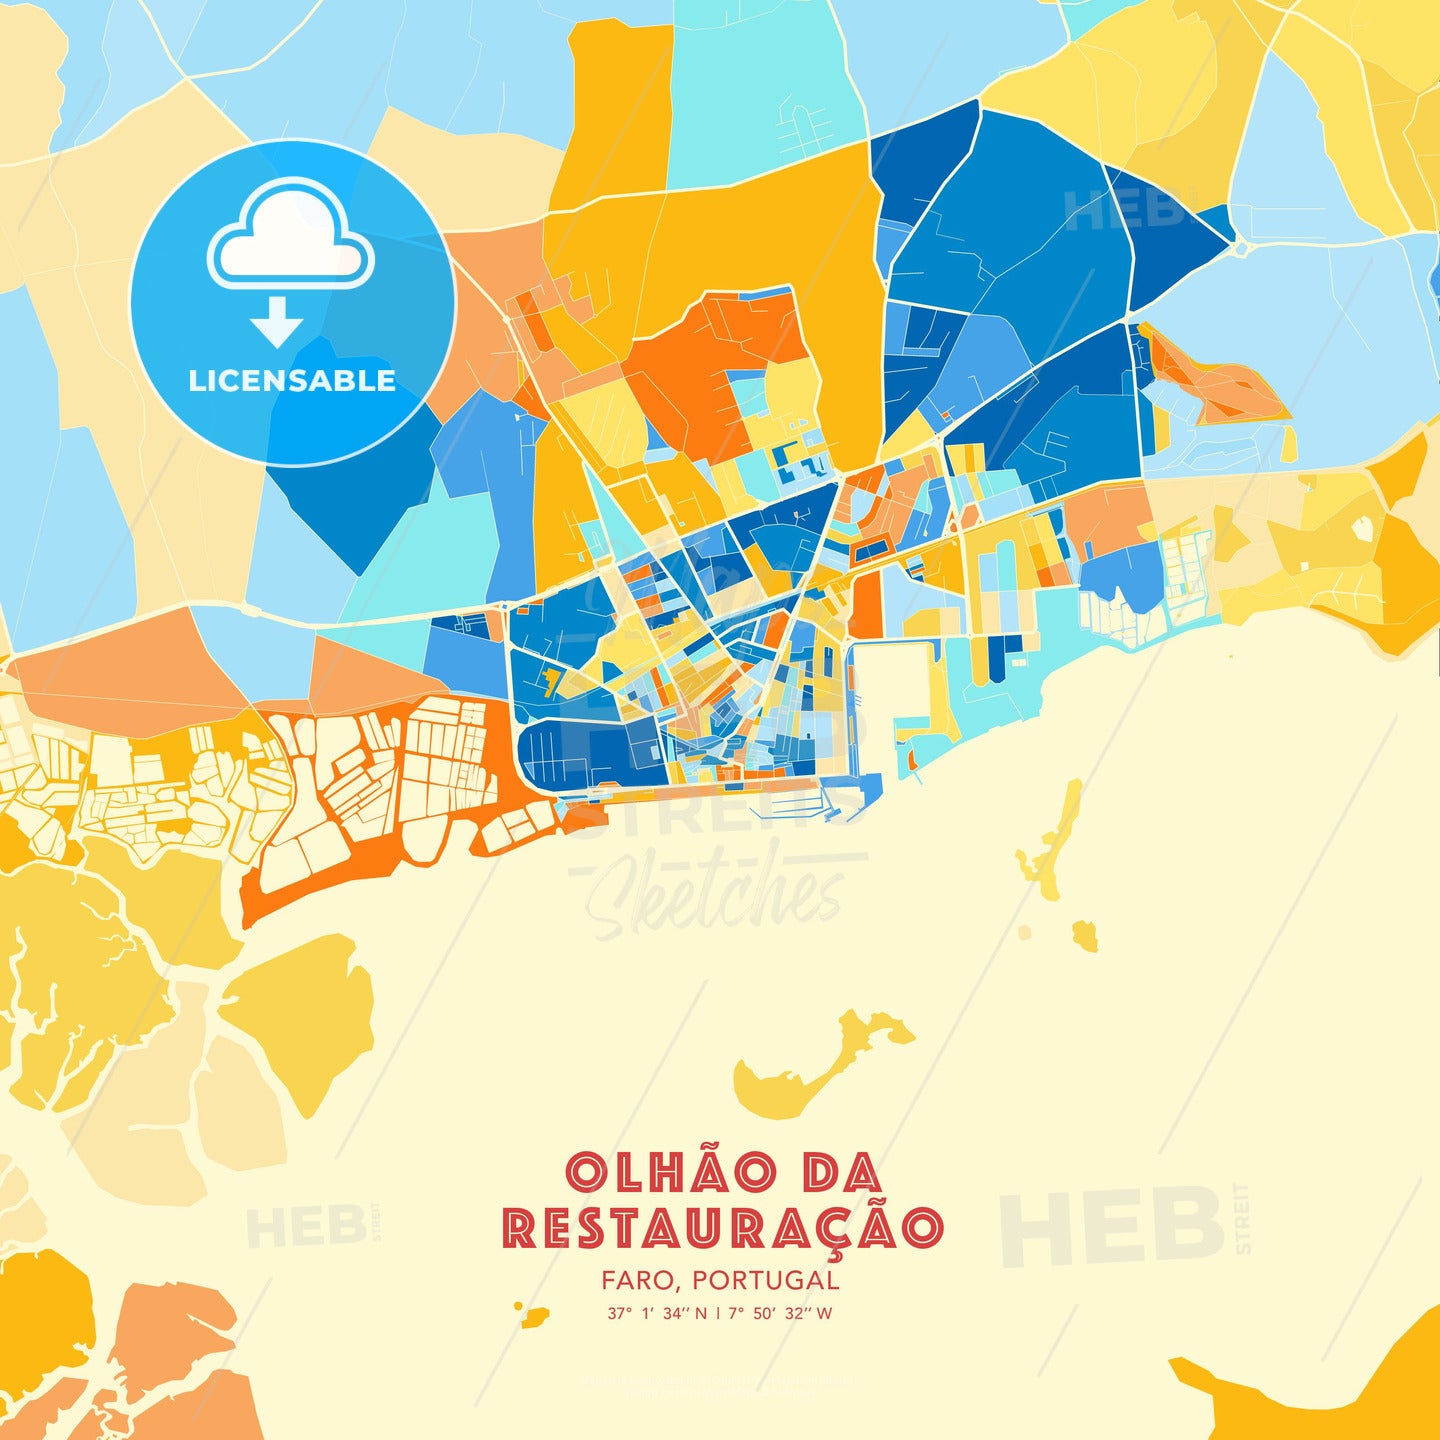 Olhão da Restauração, Faro, Portugal, map - HEBSTREITS Sketches